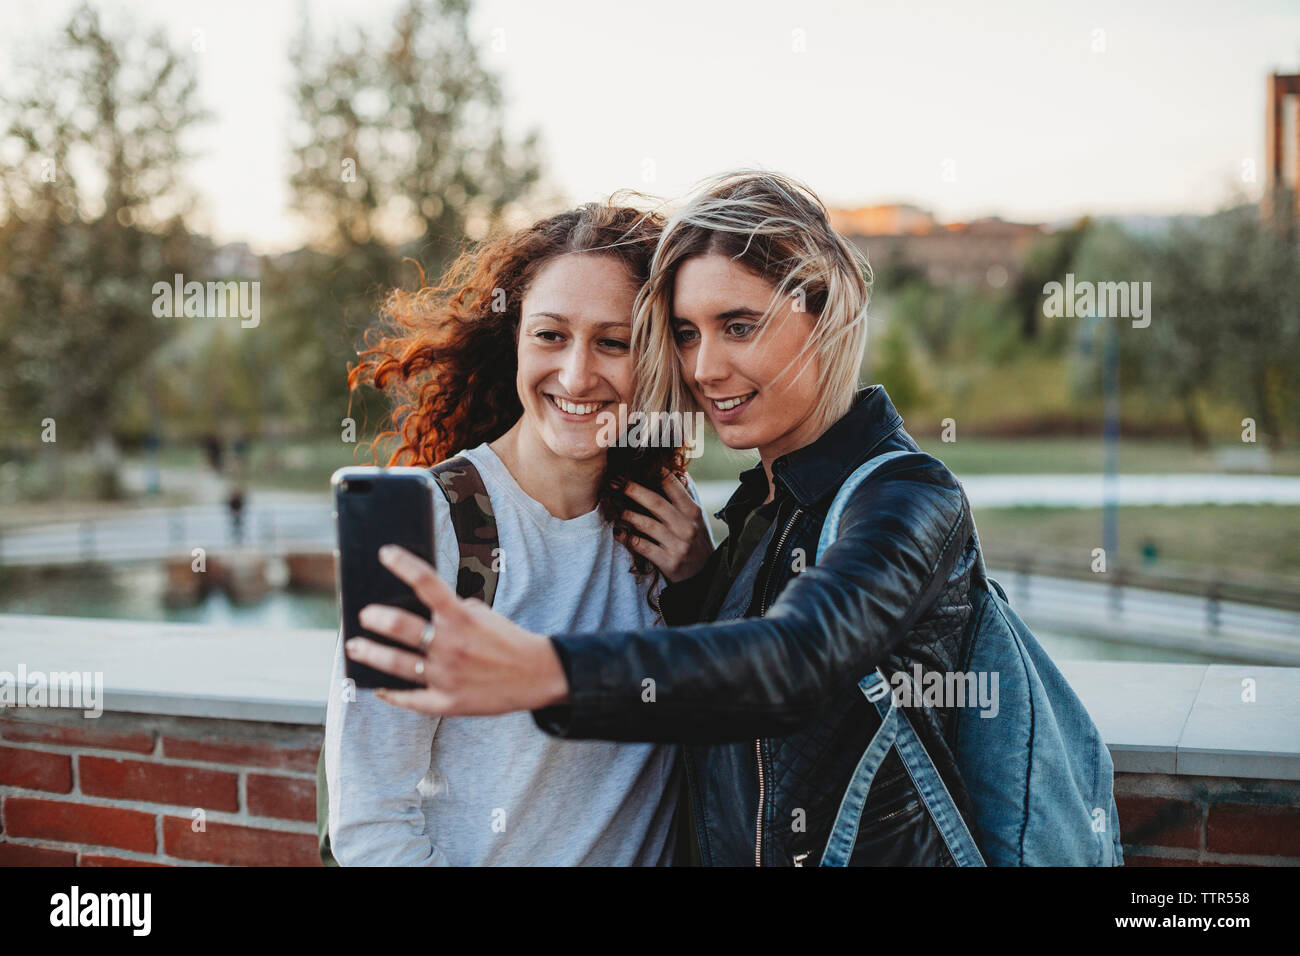 Zwei jungen Studenten ein selfie im Park zusammen Stockfoto